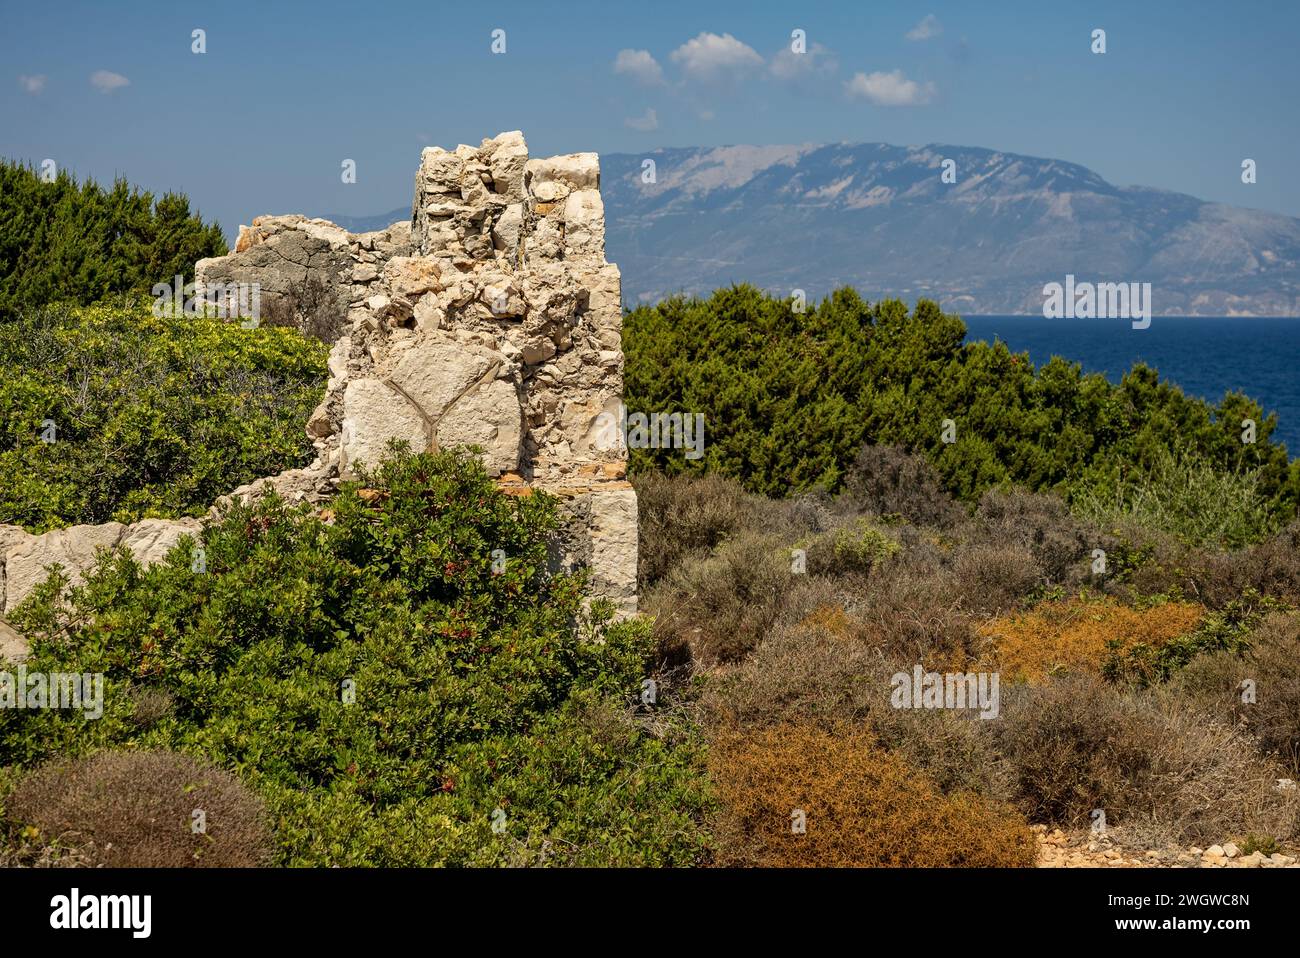 Antiche rovine sul capo Skinari in soleggiata giornata estiva. Isola di Zante, Grecia. Grecia, Zante, strada per il faro di skinari sull'isola di zante a nord c Foto Stock